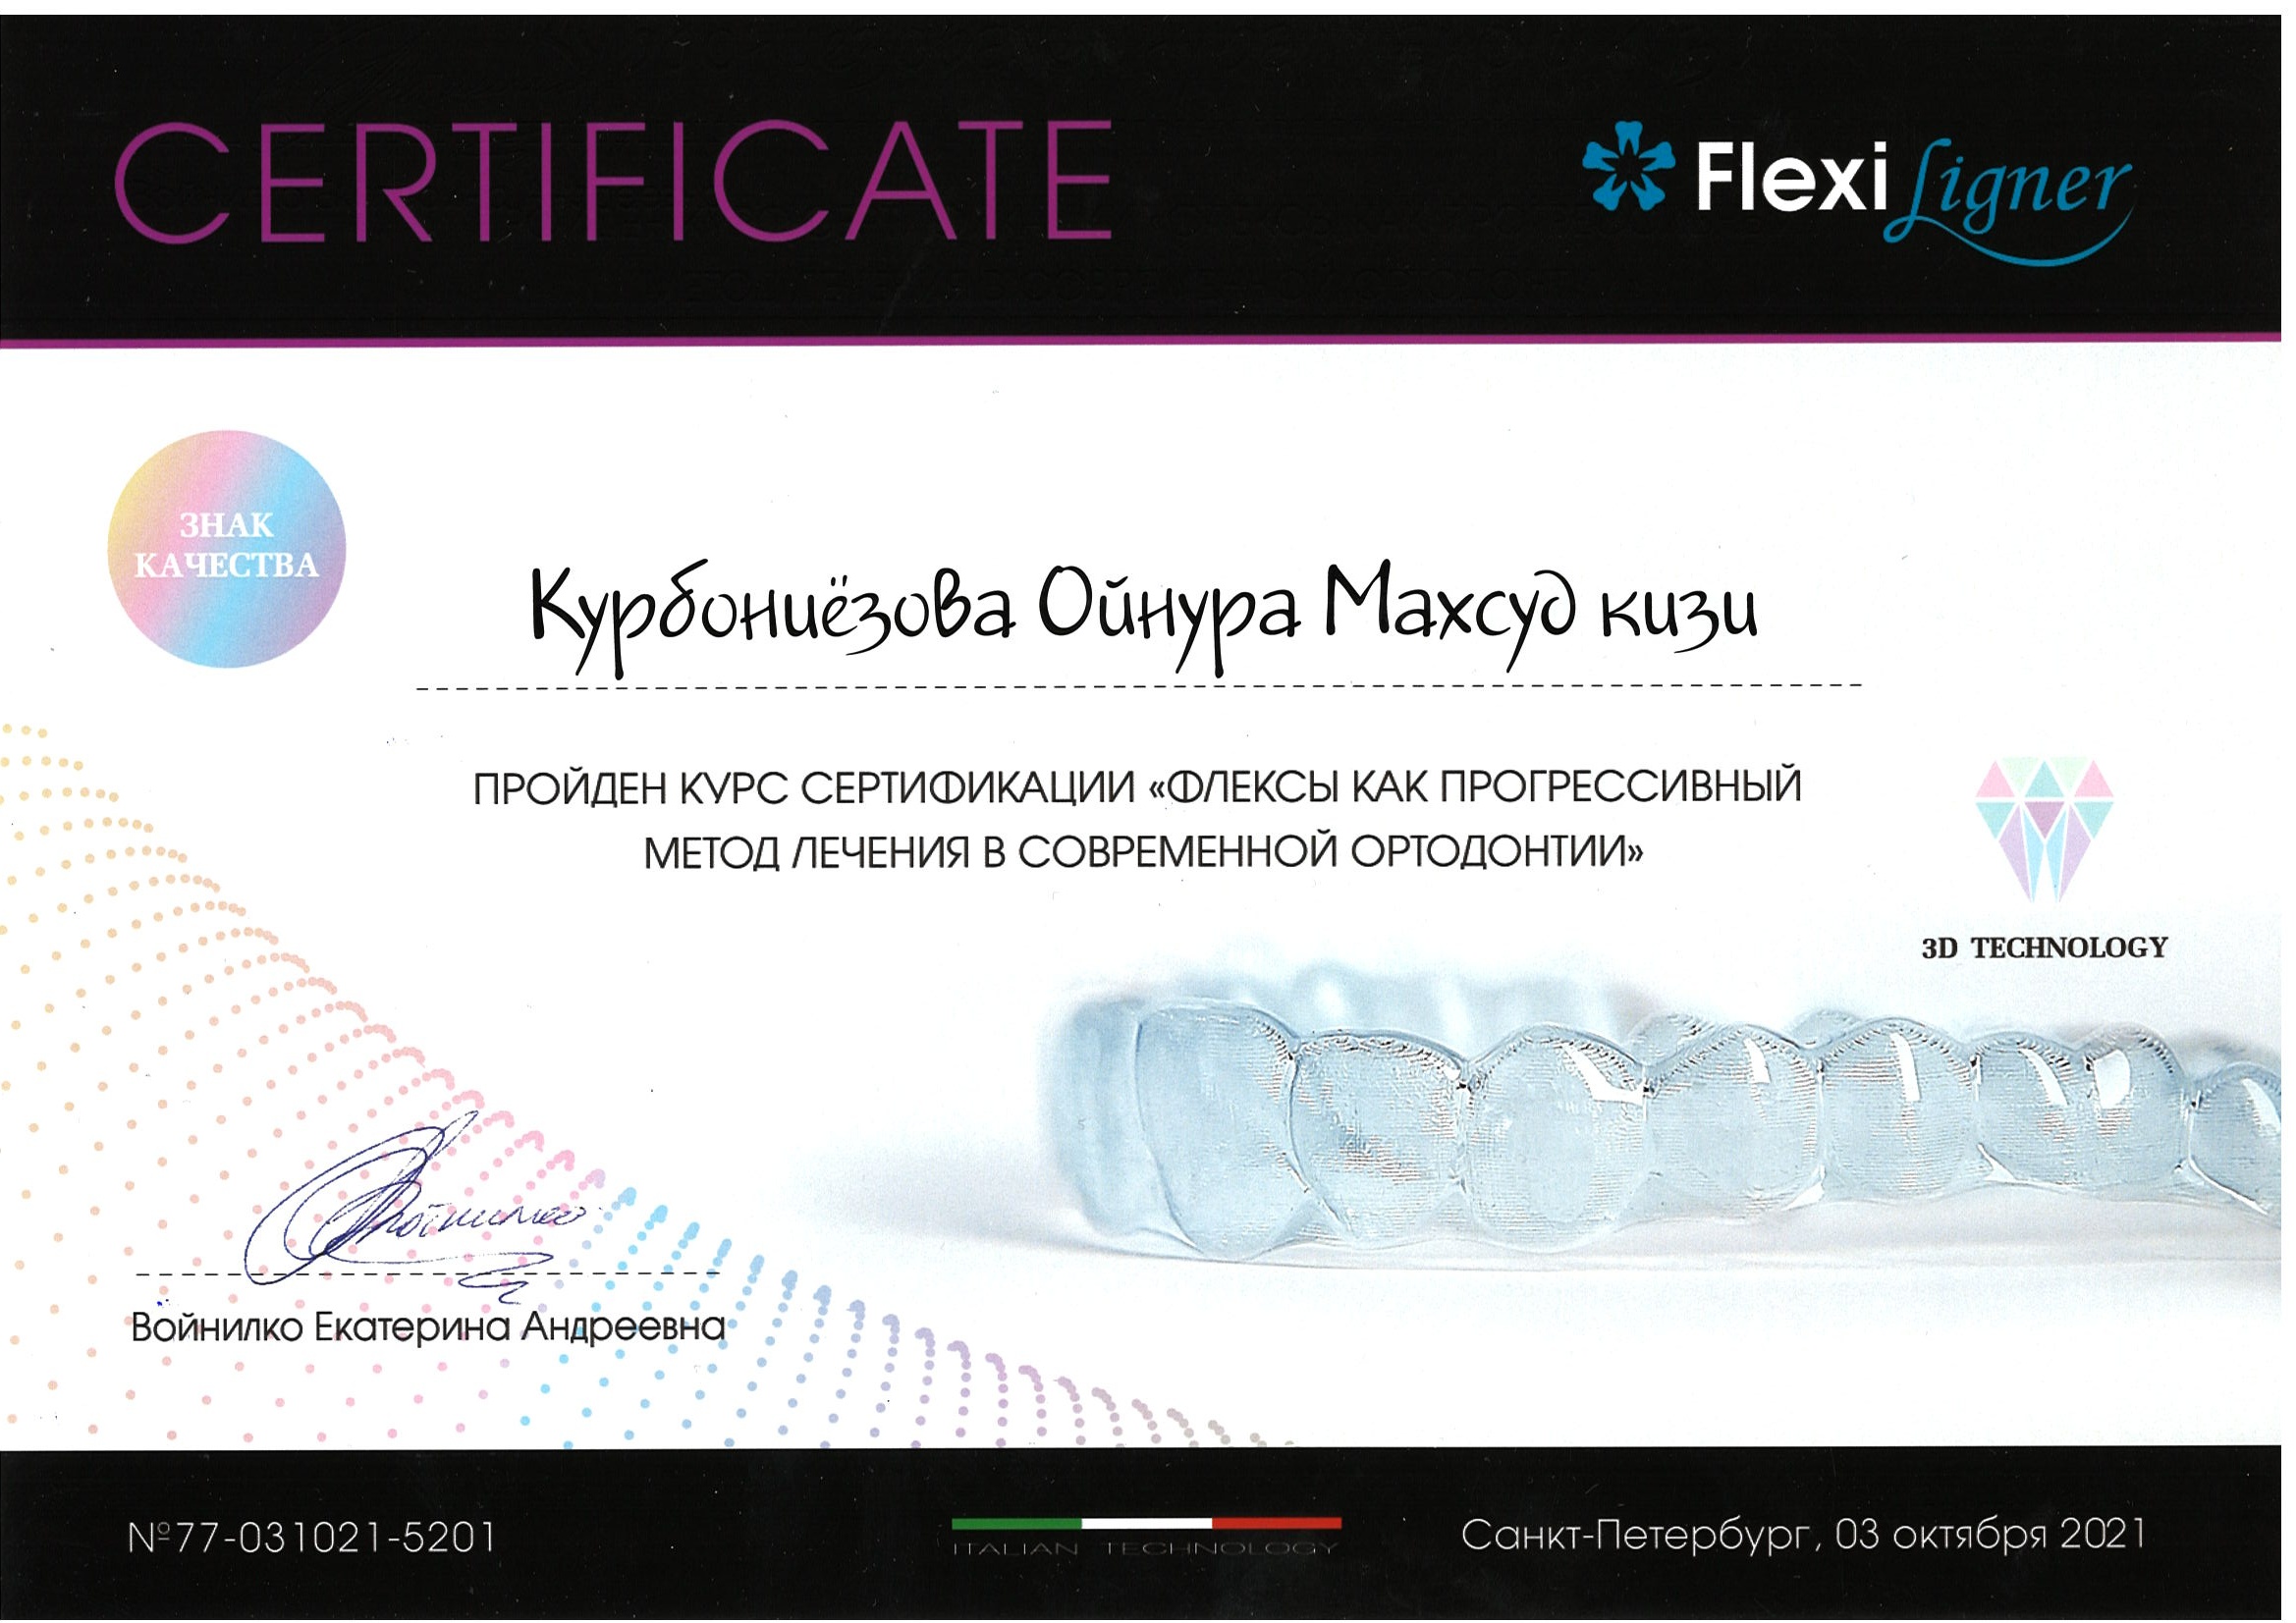 Пройден курс сертификации "Флексы как прогрессивный метод лечения в совеременной ортодонтии"